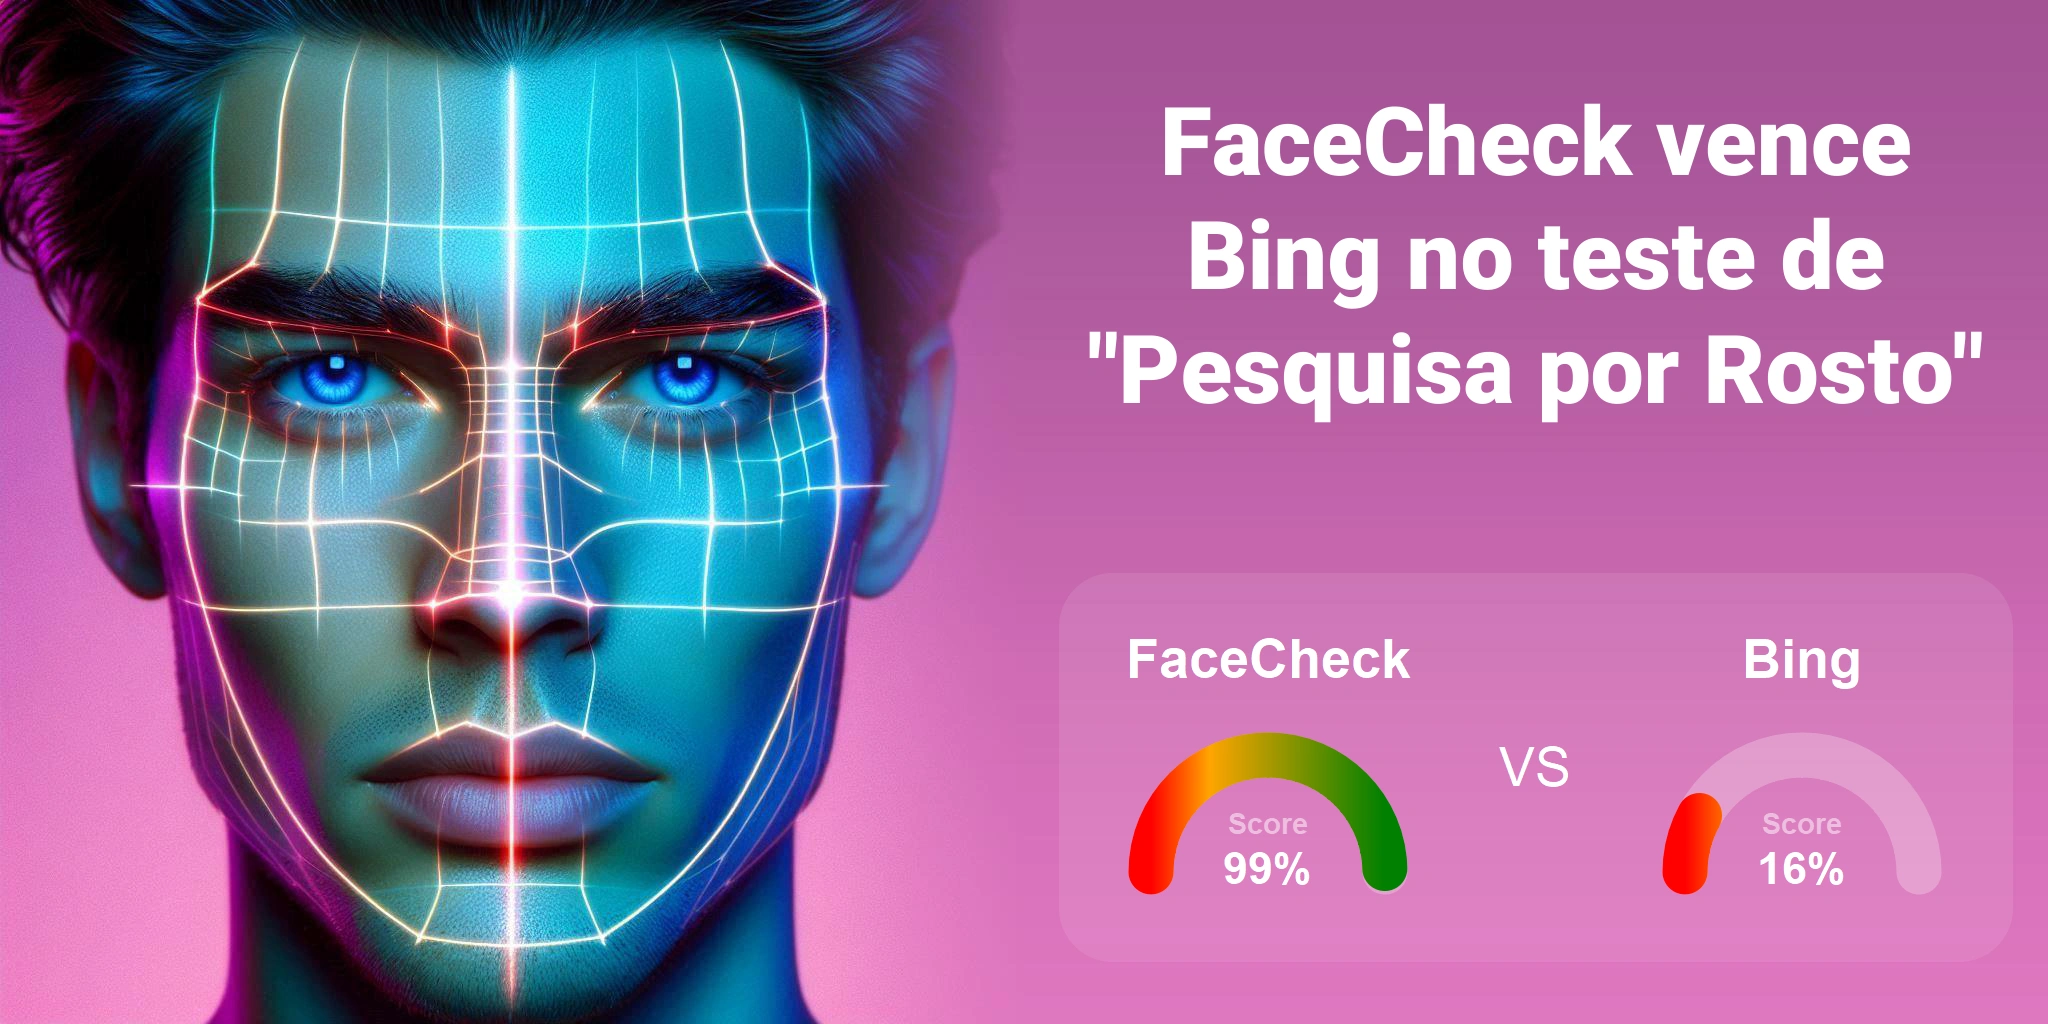 Qual é melhor para busca de rostos: <br>FaceCheck ou Bing?